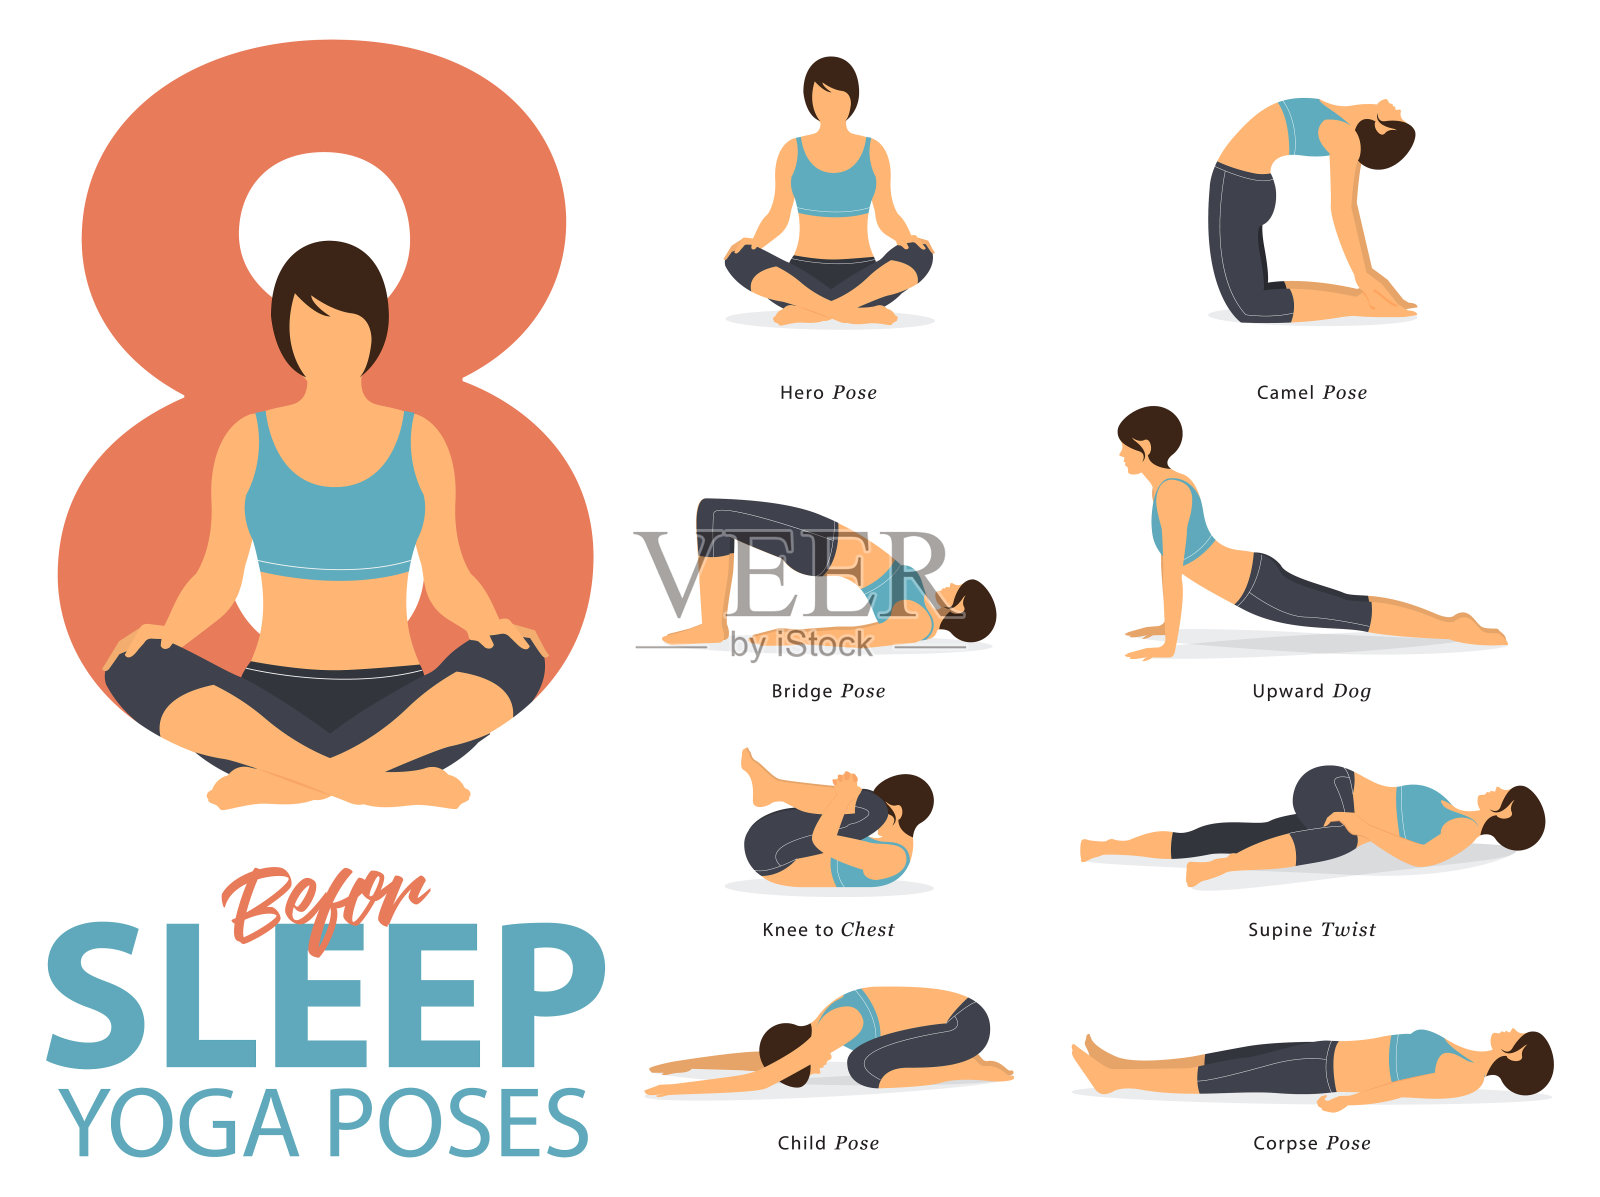 平面设计的瑜伽在睡觉前锻炼的姿势。女人在蓝色运动服和黑色瑜伽裤锻炼。向量插画图片素材